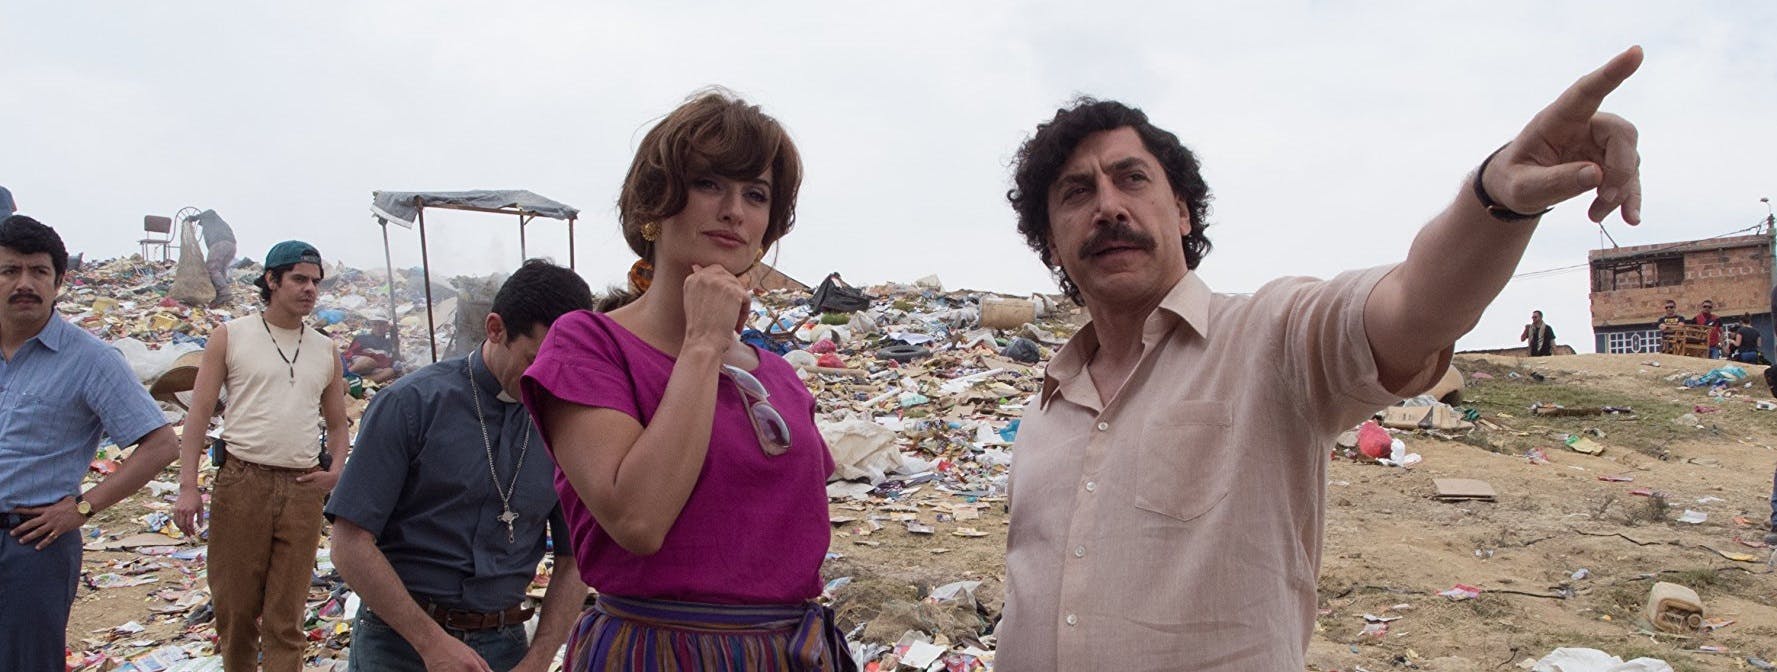 Escobar: La Traición